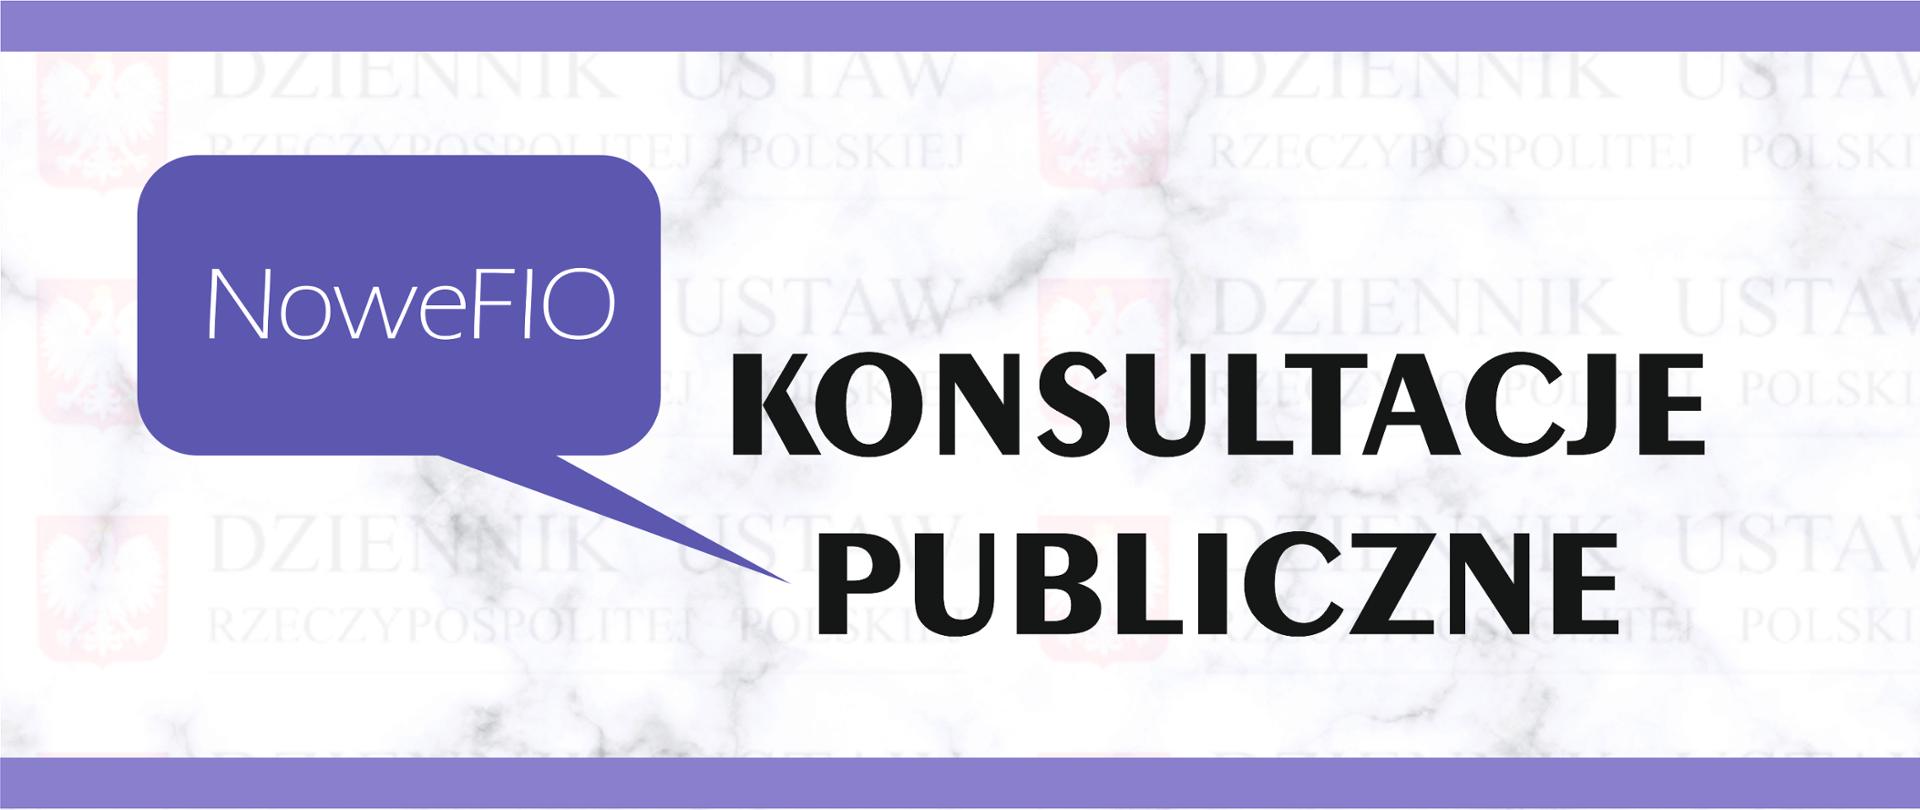 NoweFIO - Konsultacje Publiczne